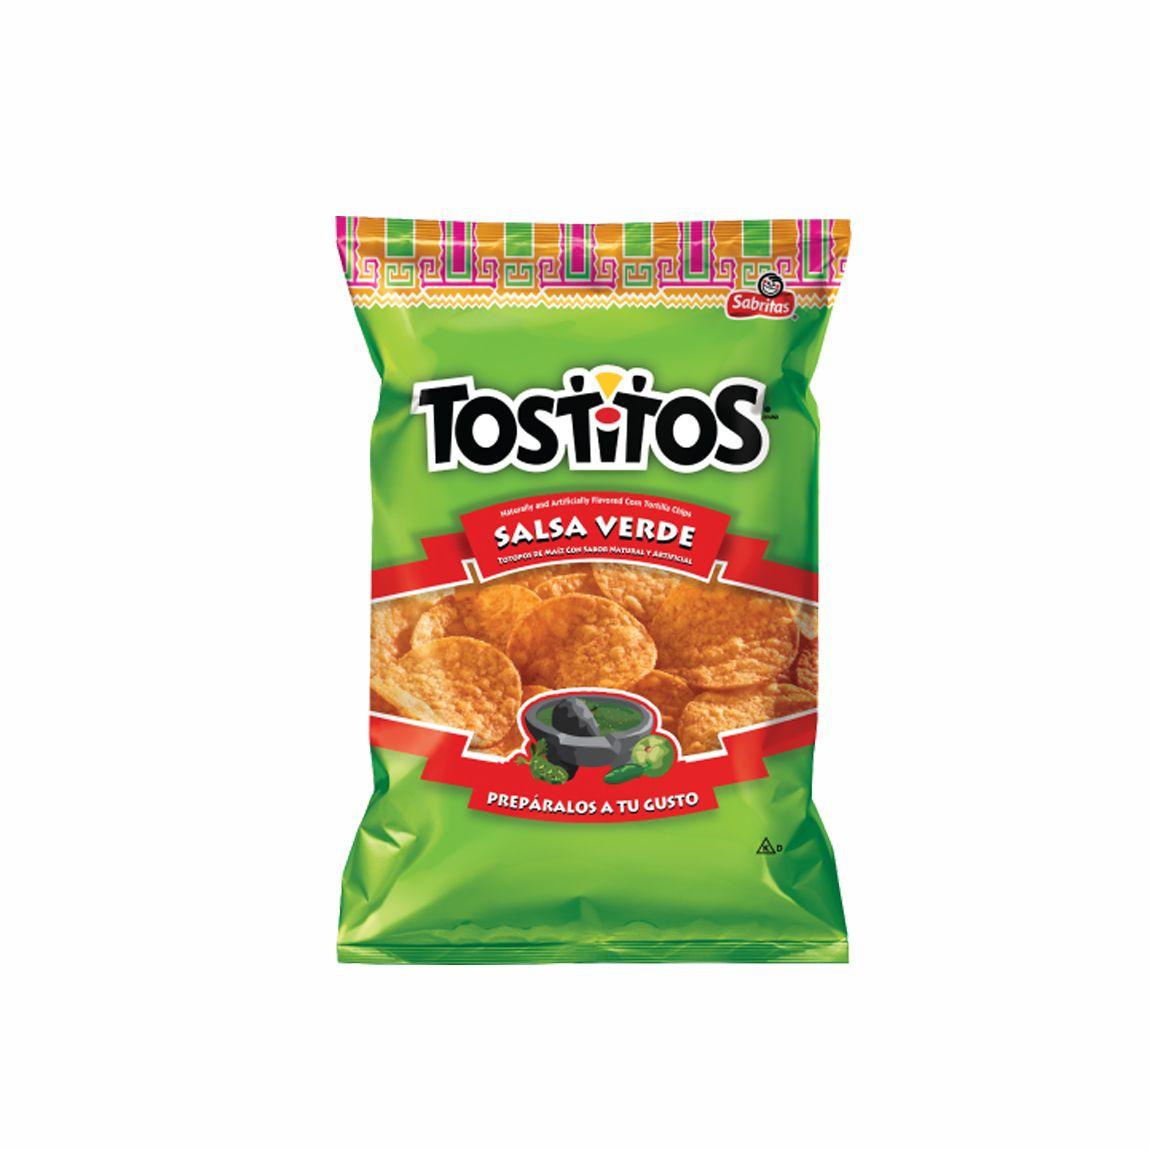 Tostitos Salsa Logo - TOSTITOS SALSA VERDE 10 OZ